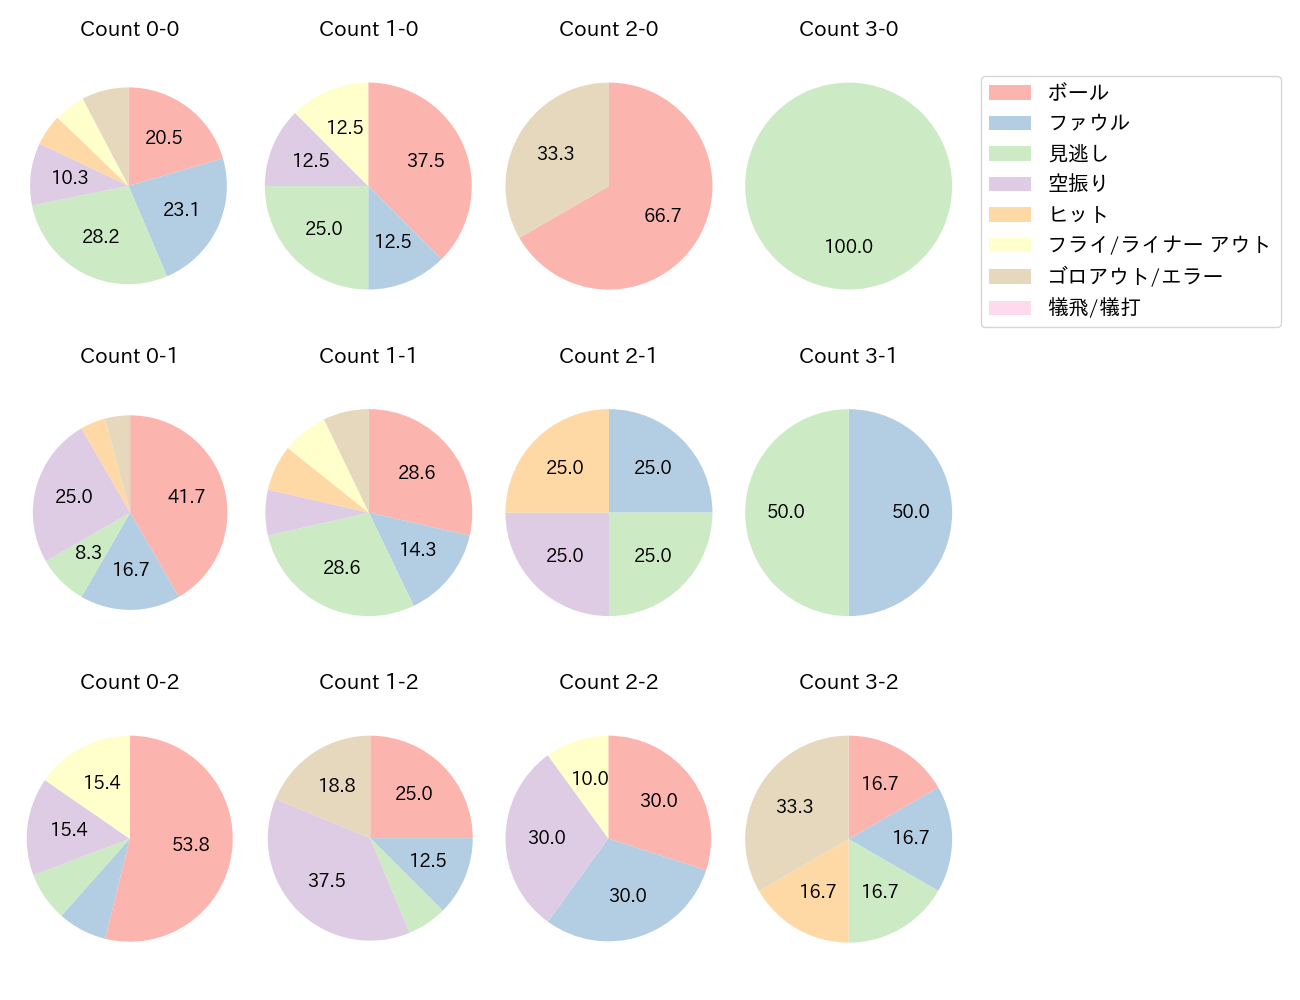 小幡 竜平の球数分布(2022年4月)